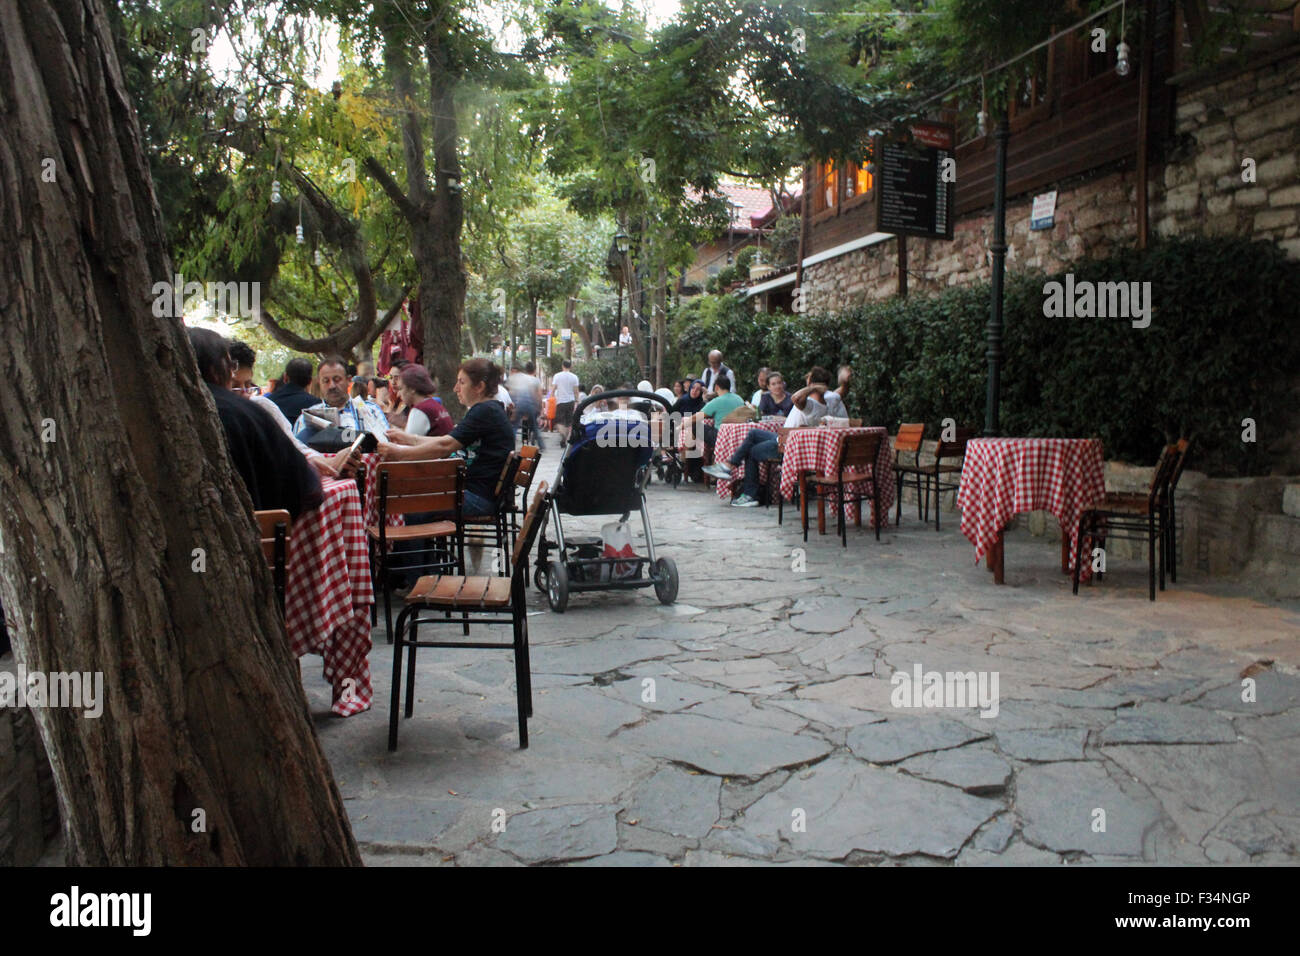 Estambul, Turquía - 21 de septiembre de 2015: Los pueblos están sentados en el café de Estambul la famosa colina de Pierre Loti Foto de stock